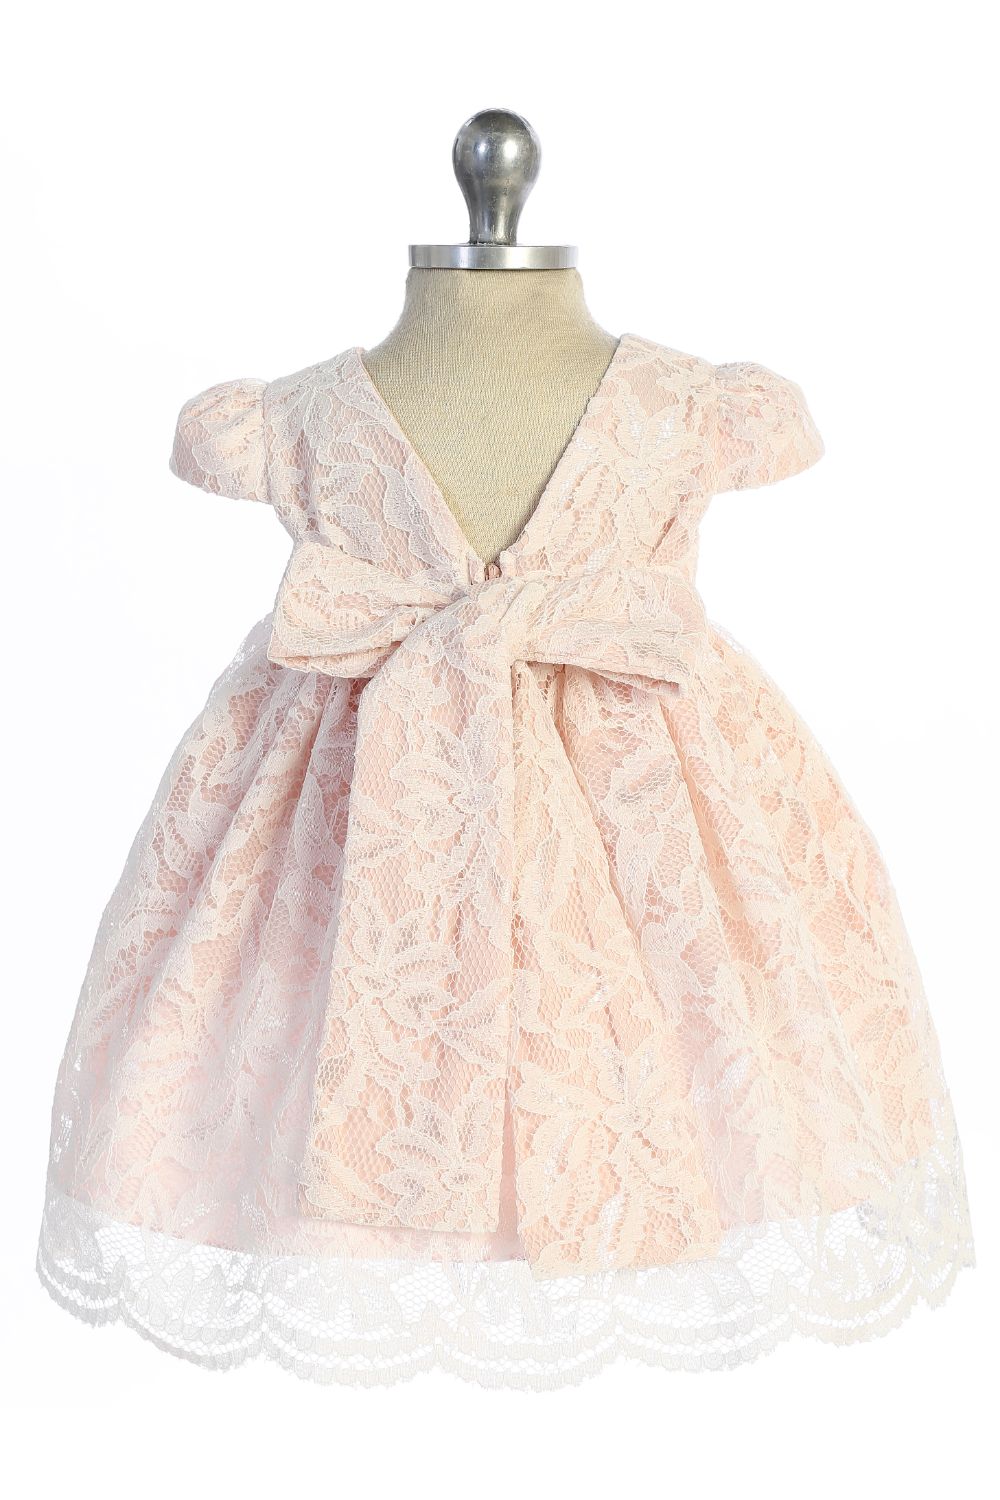 Dress - Lace V Back Bow Baby Dress